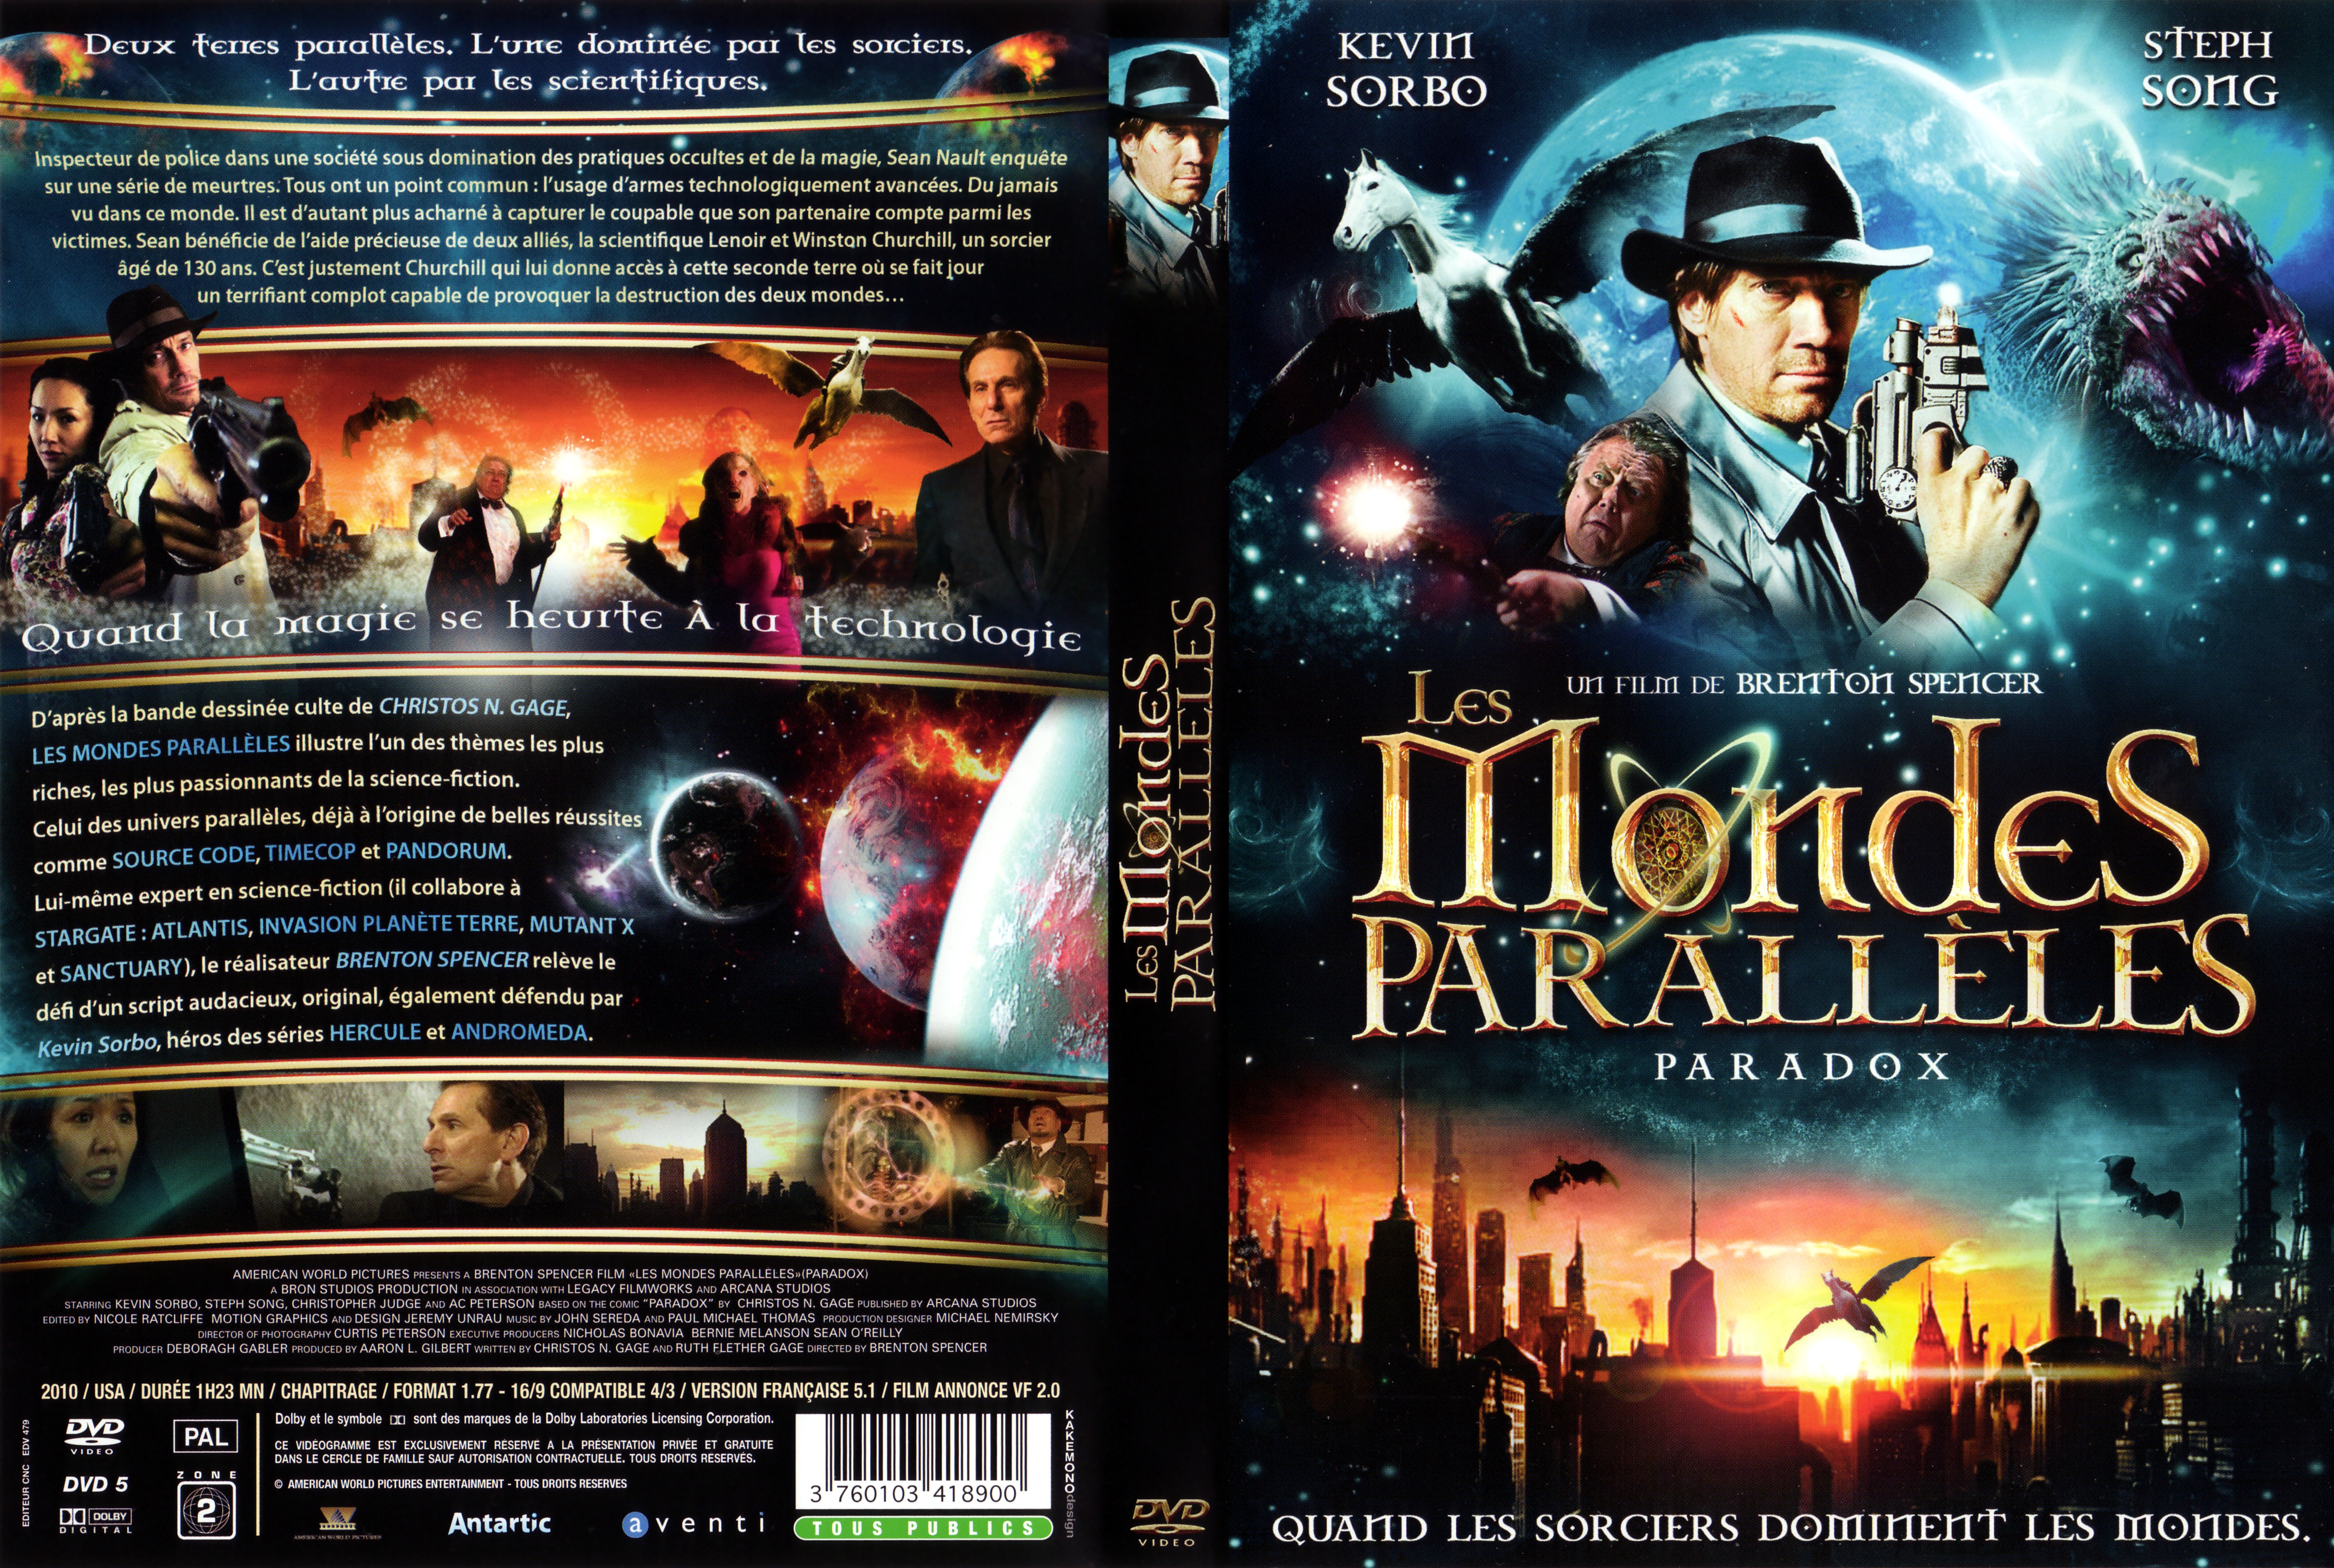 Jaquette DVD Les mondes paralleles